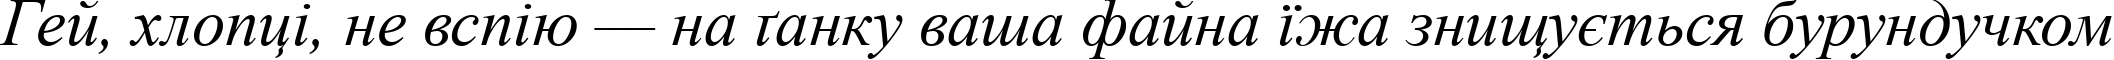 Пример написания шрифтом Times New Roman Italic текста на украинском